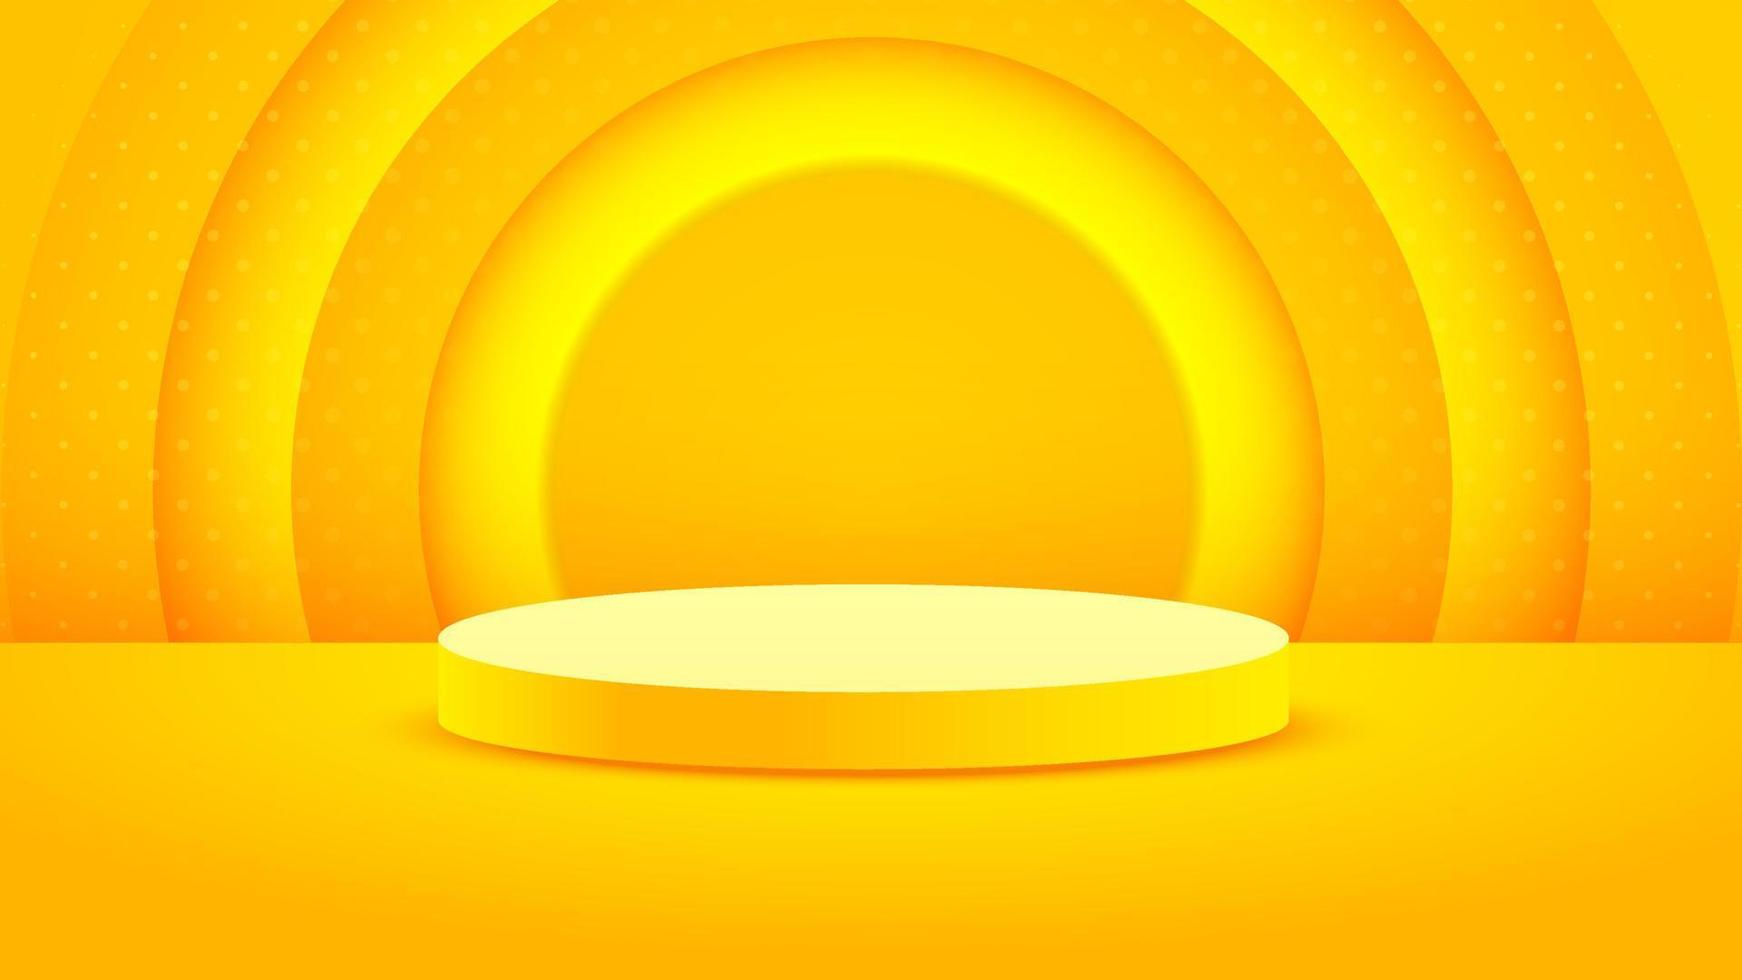 minimalisme d'arrière-plan réaliste en relief jaune avec vecteur de podium vierge 3d pour placer votre produit, illustration de bannière abstraite